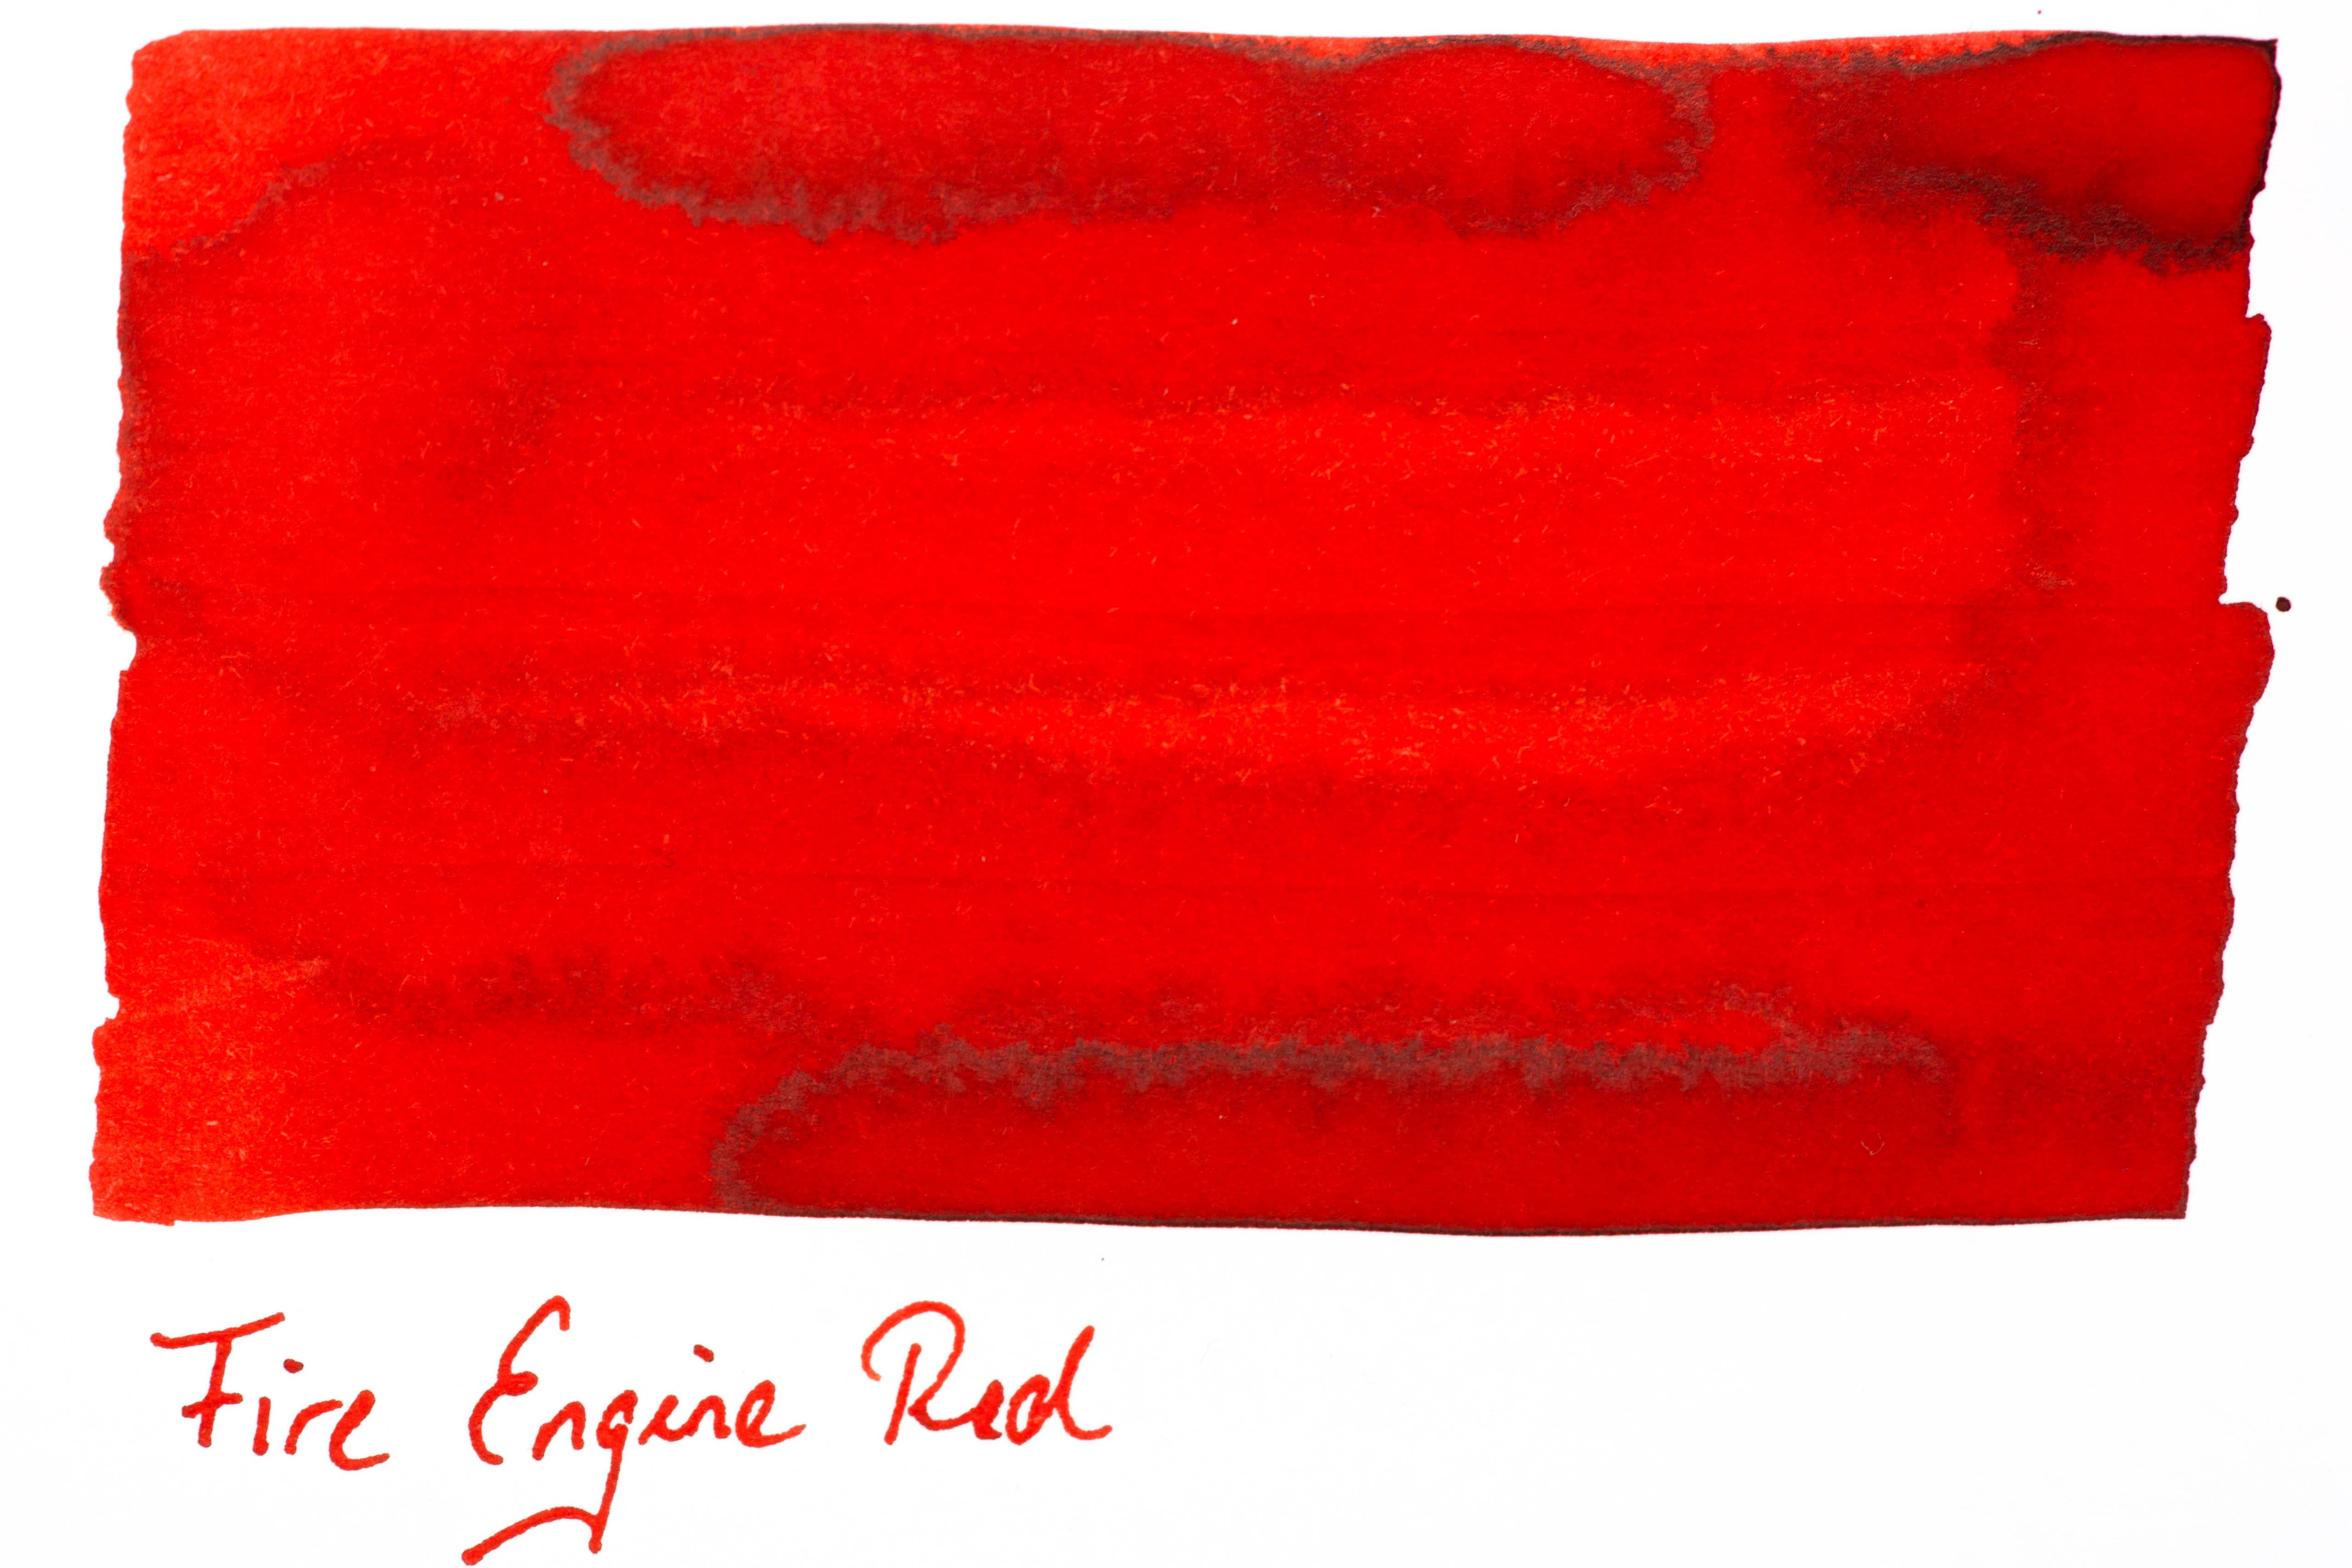 Robert Oster - Fire Engine Red